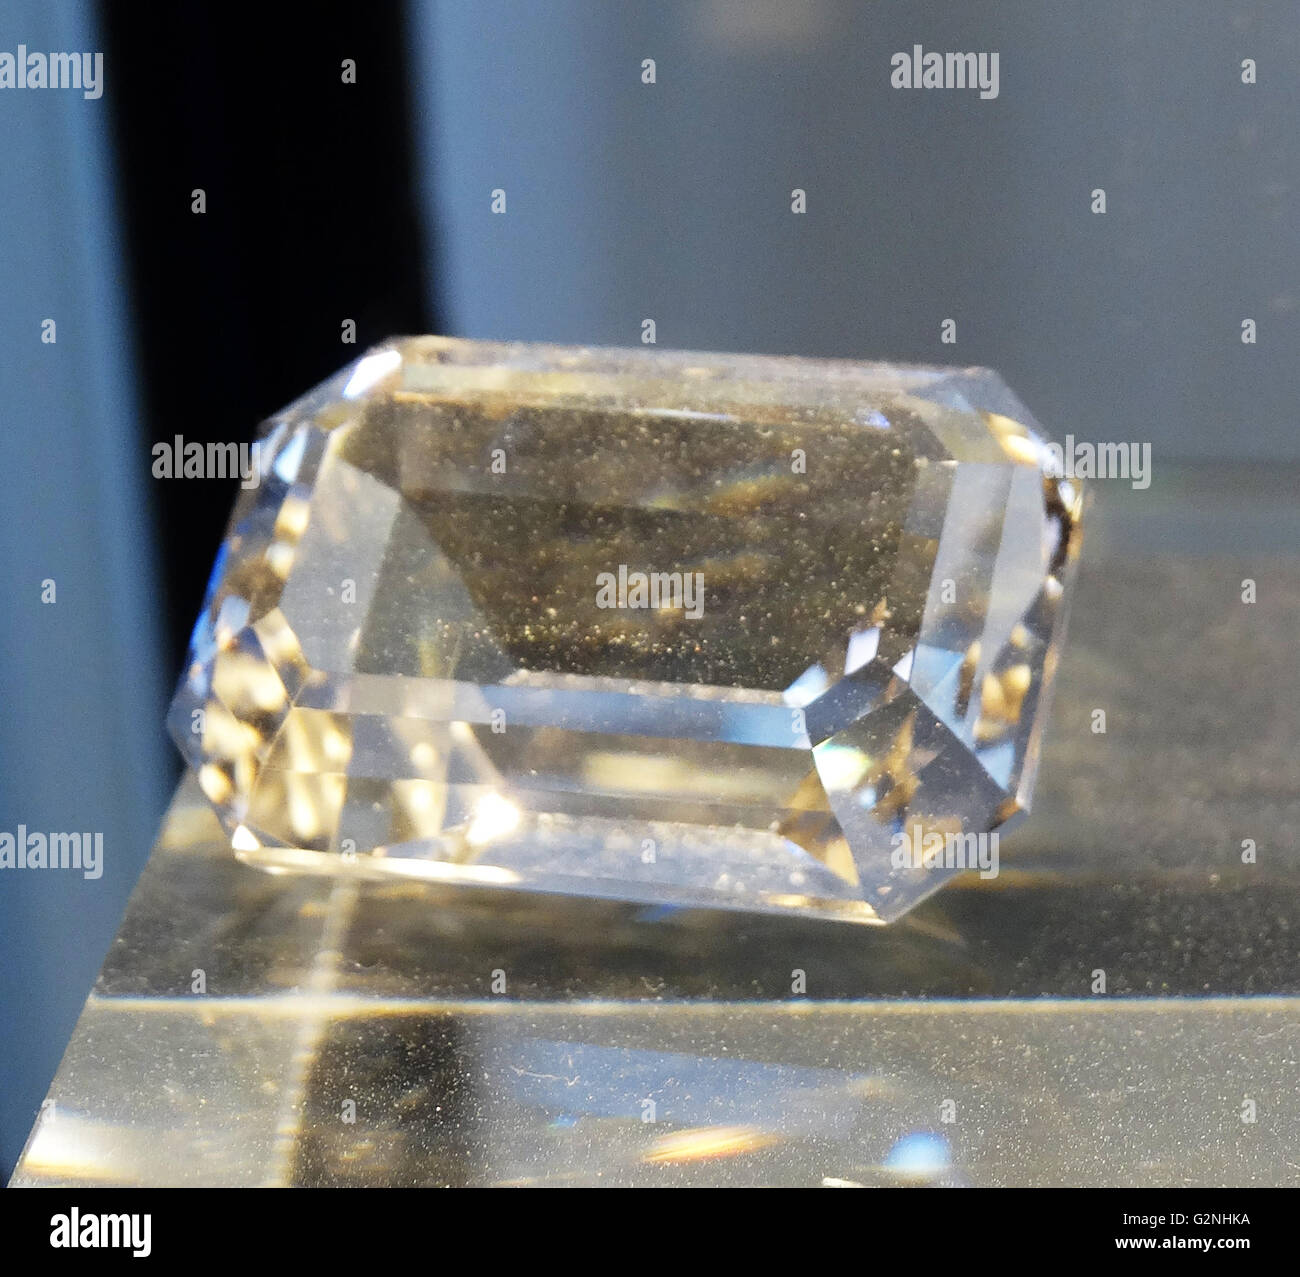 L'île de York Diamond mesuré à 60,25 carats. Datée 2014 Banque D'Images